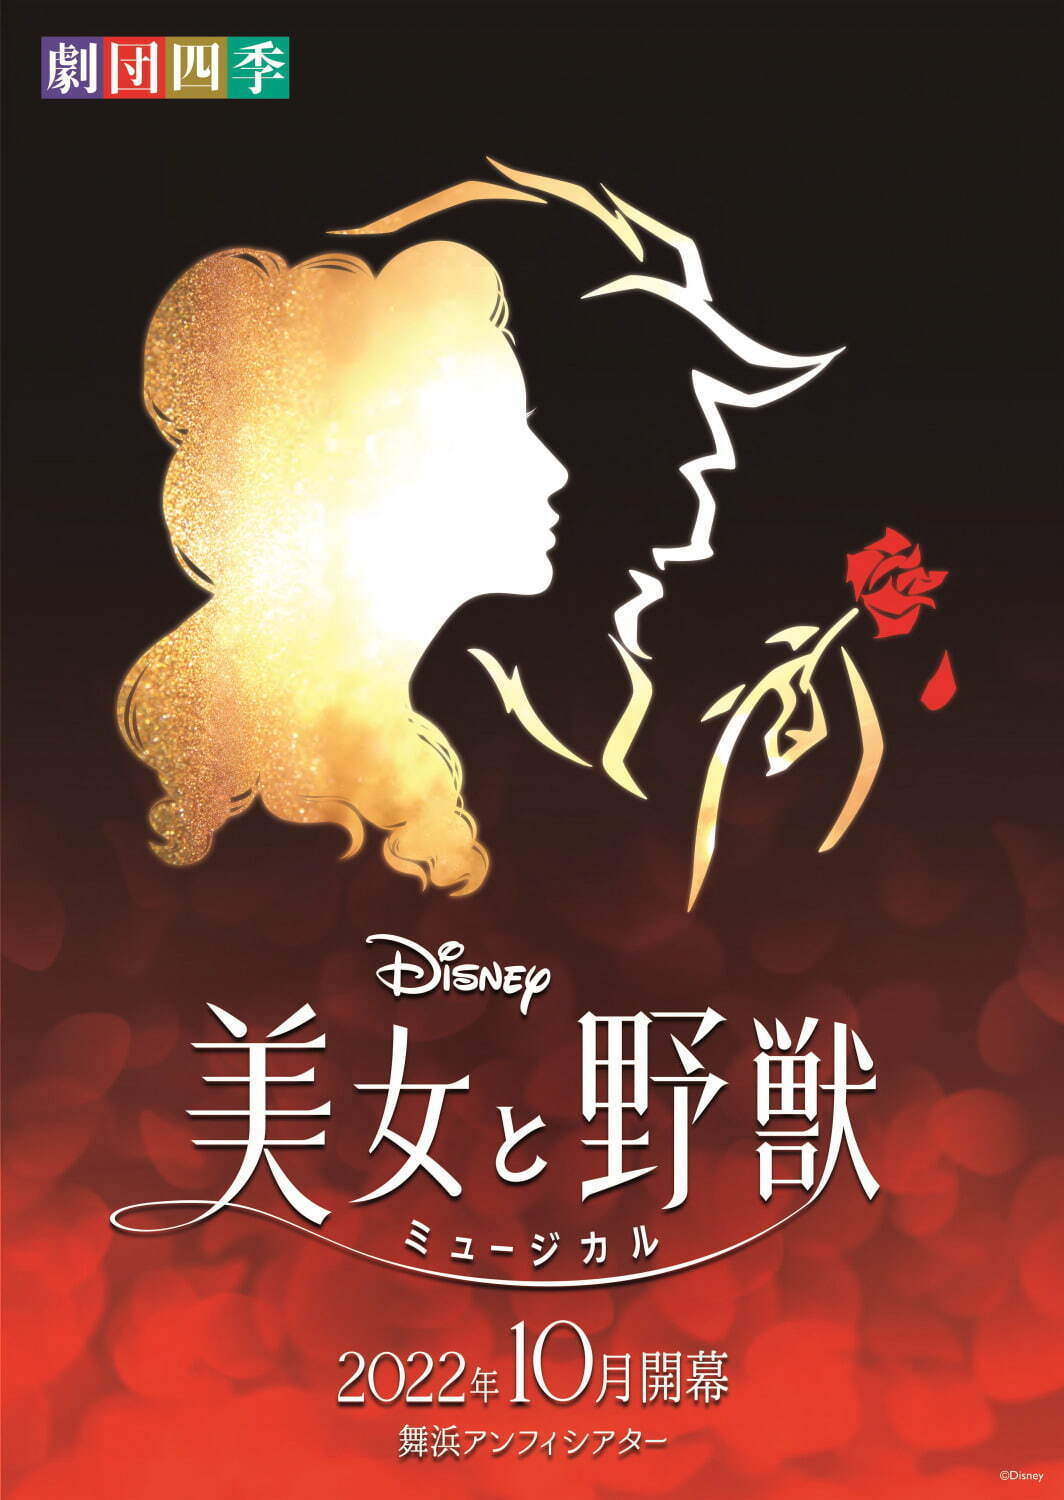 劇団四季がディズニーミュージカル 美女と野獣 新演出版を上演 舞浜アンフィシアターで22年10月開幕 ファッションプレス